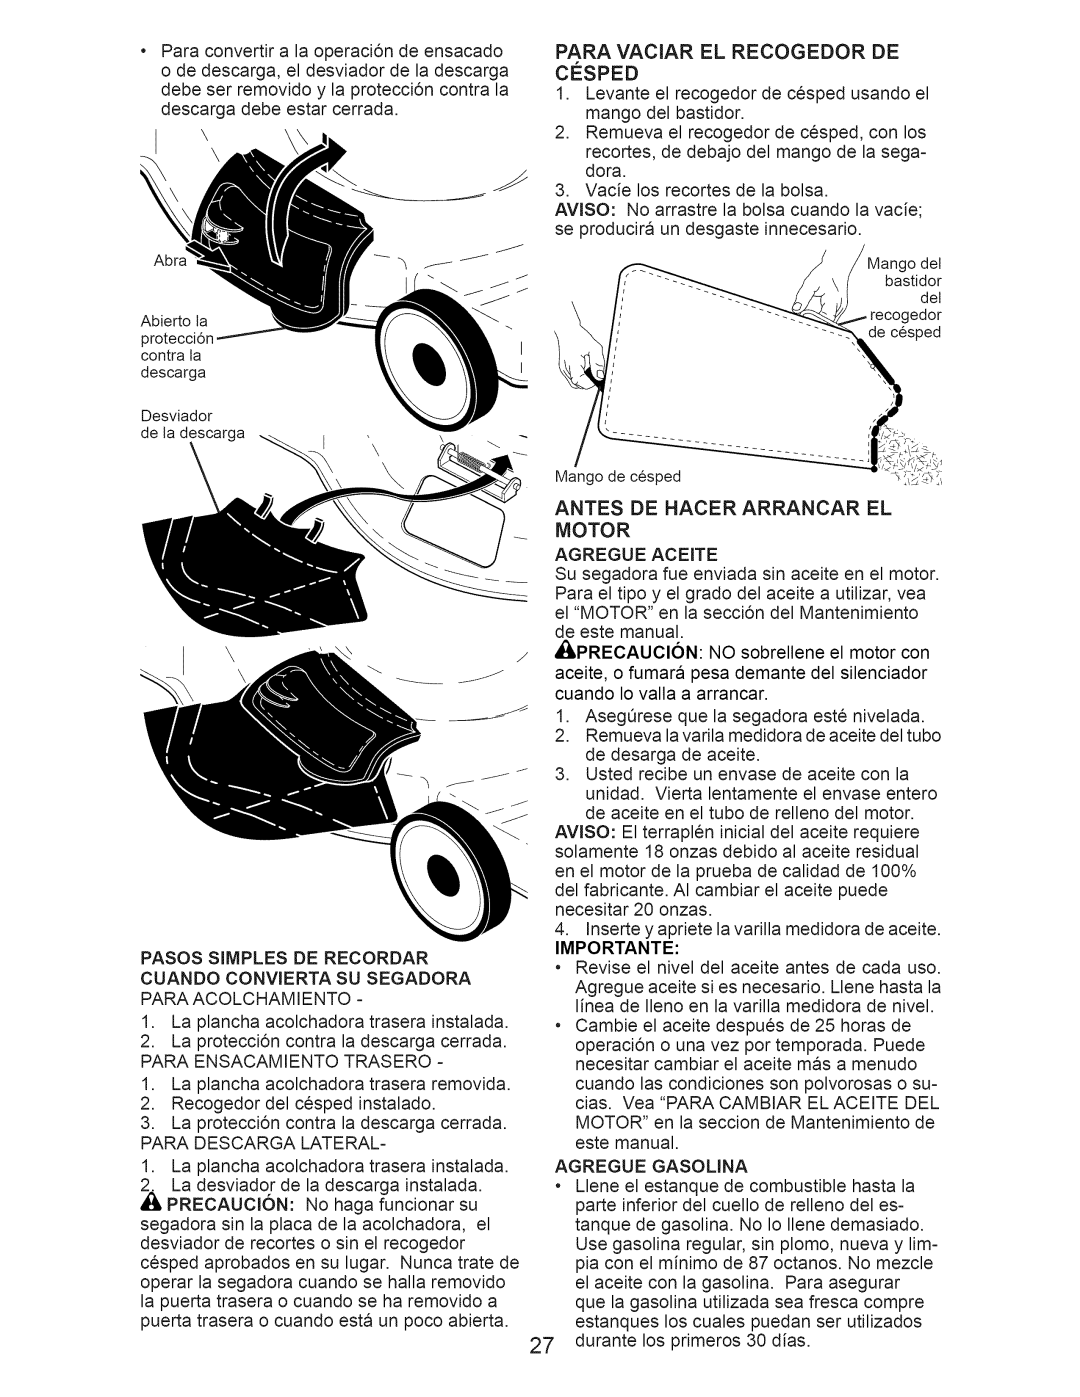 Craftsman 917.370620 owner manual Paraconvertira la operaci6ndeensacado, Antes De Hacer Arrancar El Motor 